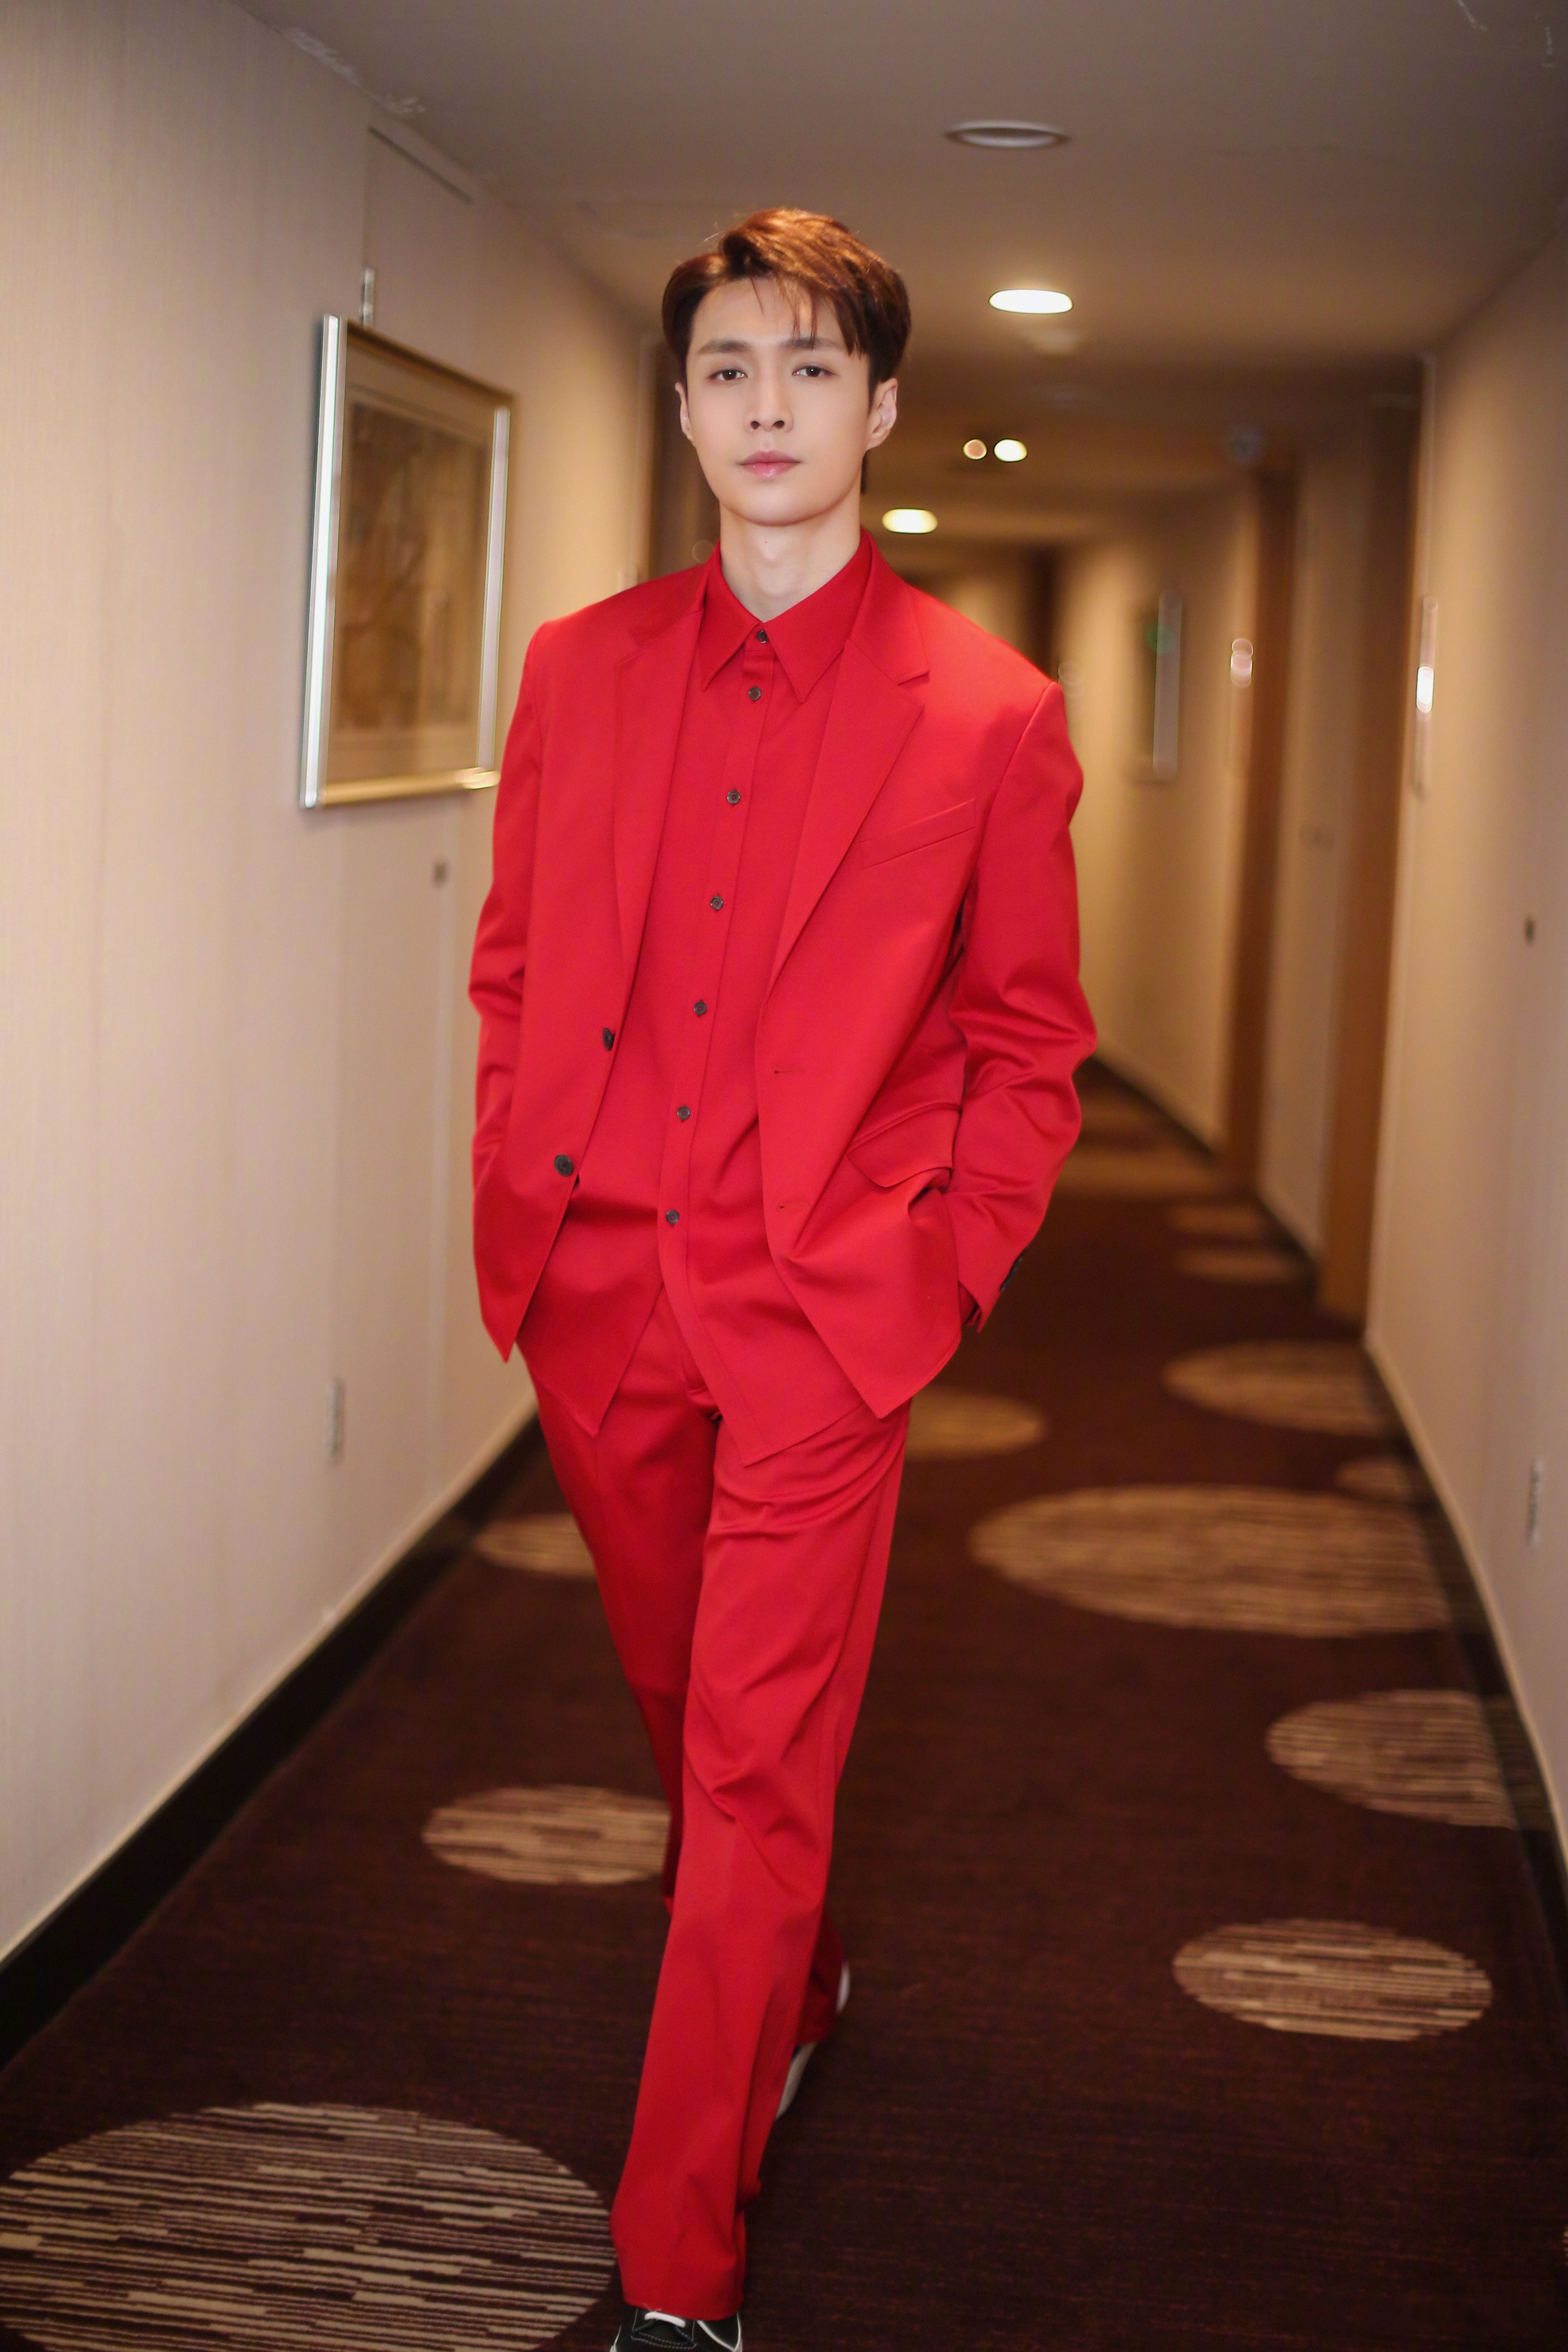 2019年央视春晚直播即将开始,张艺兴一身红色西装造型映衬新春喜气